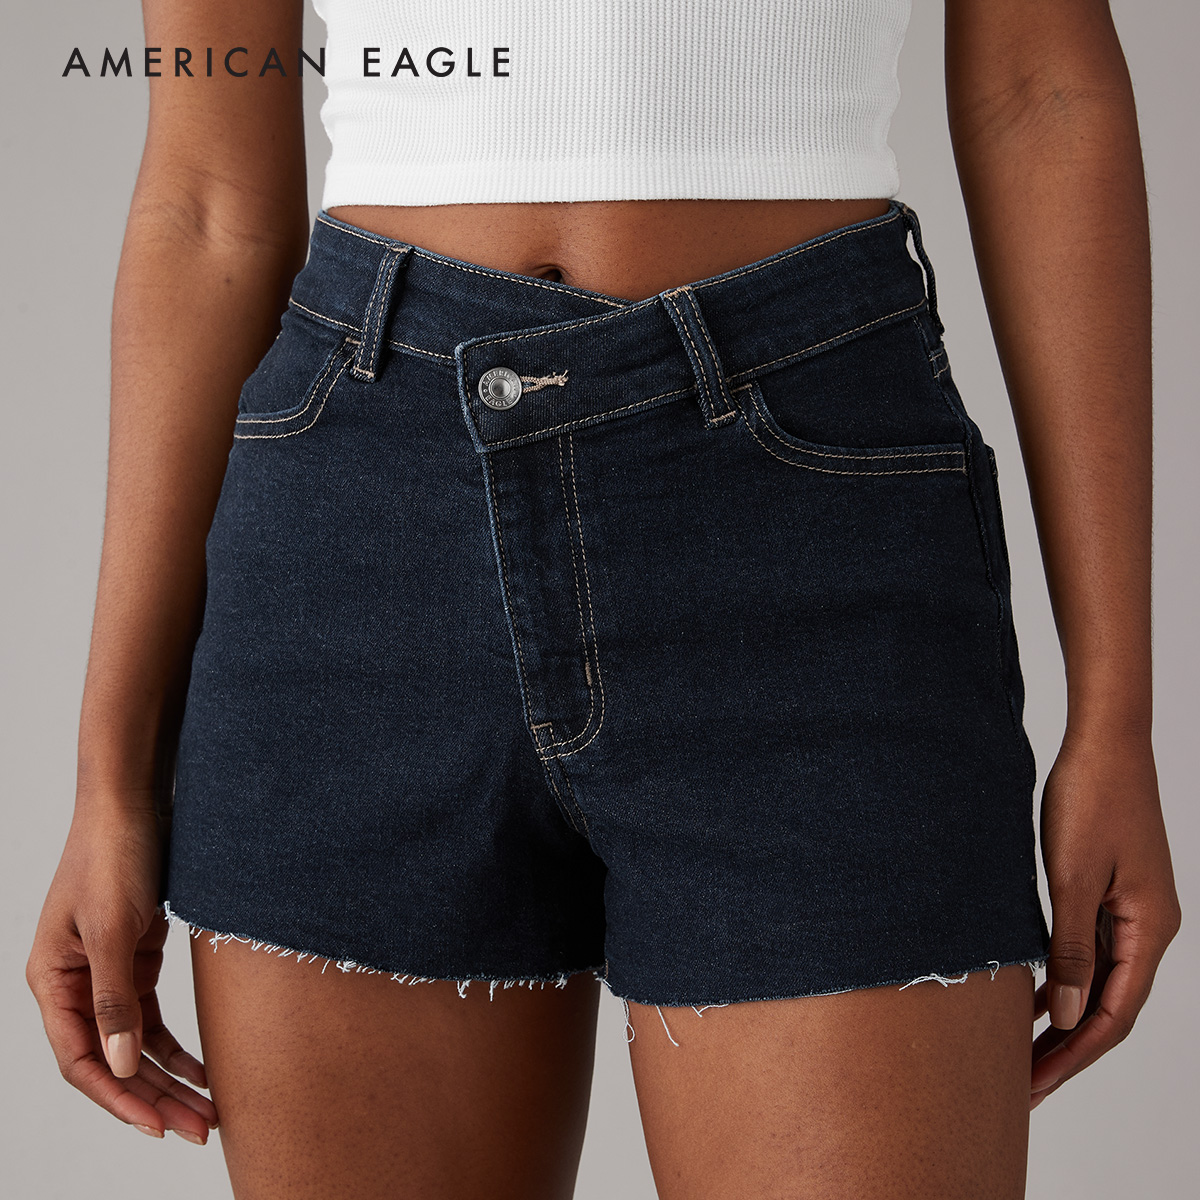 กางเกงยีนส์ขาสั้น American Eagle Stretch Crossover Waist Denim Mom Short กางเกง ยีนส์ ผู้หญิง ขาสั้น ทรงมัม (NWSS 033-7824-896)